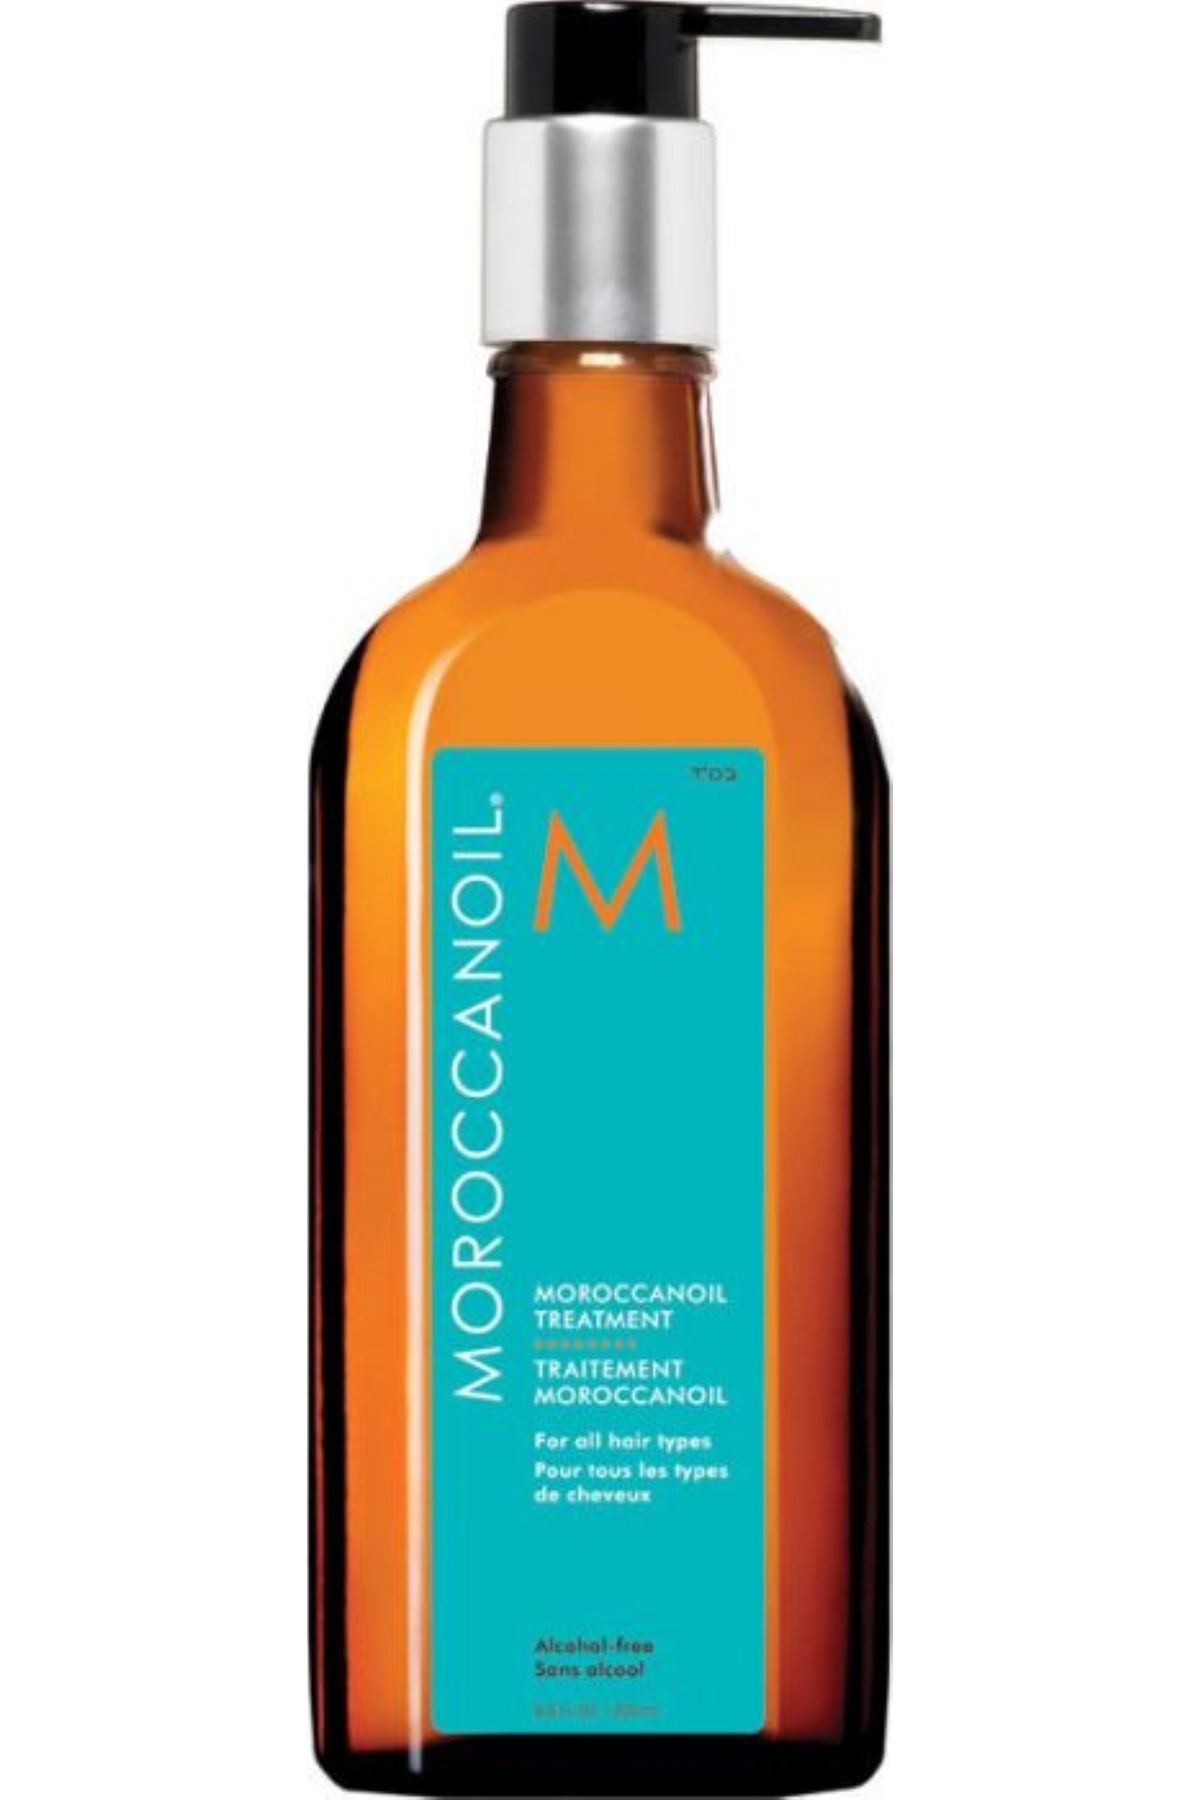 Moroccanoil Treatment Kuruma Süresini Hızlandıran Alkolsüz Saç Bakım Yağı (200ml) BSECRETSKALİTESİ16